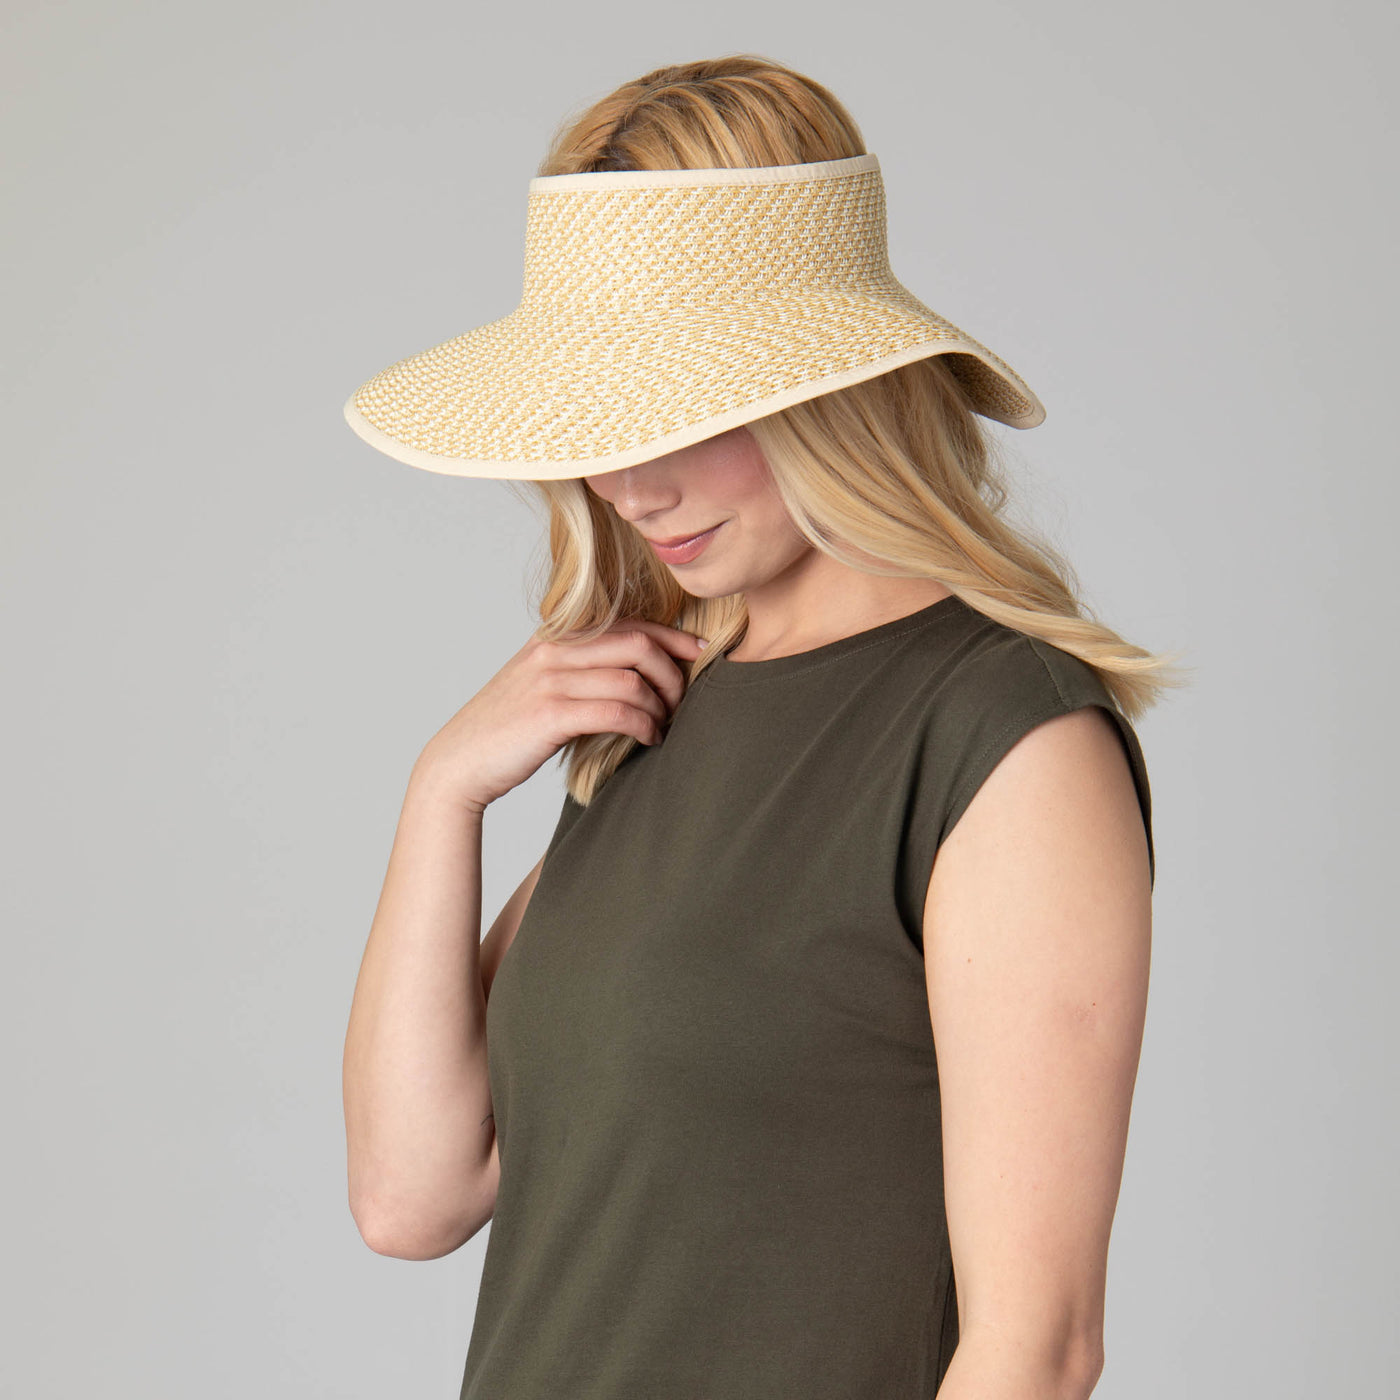 Women's Ultrabraid Large Brim Visor-VISOR-San Diego Hat Company